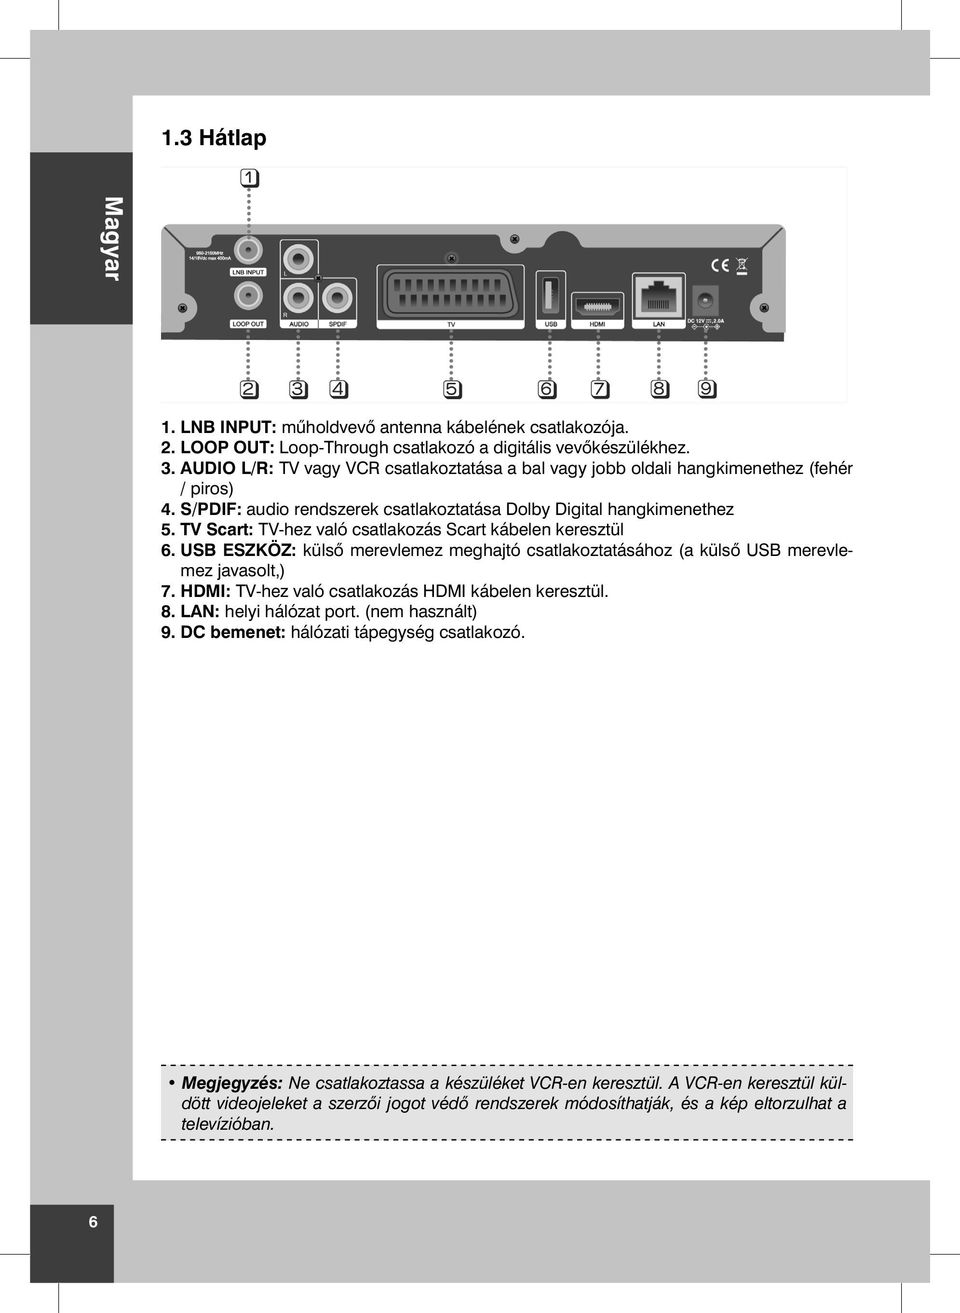 TV Scart: TV-hez való csatlakozás Scart kábelen keresztül 6. USB ESZKÖZ: küls merevlemez meghajtó csatlakoztatásához (a küls USB merevlemez javasolt,) 7.